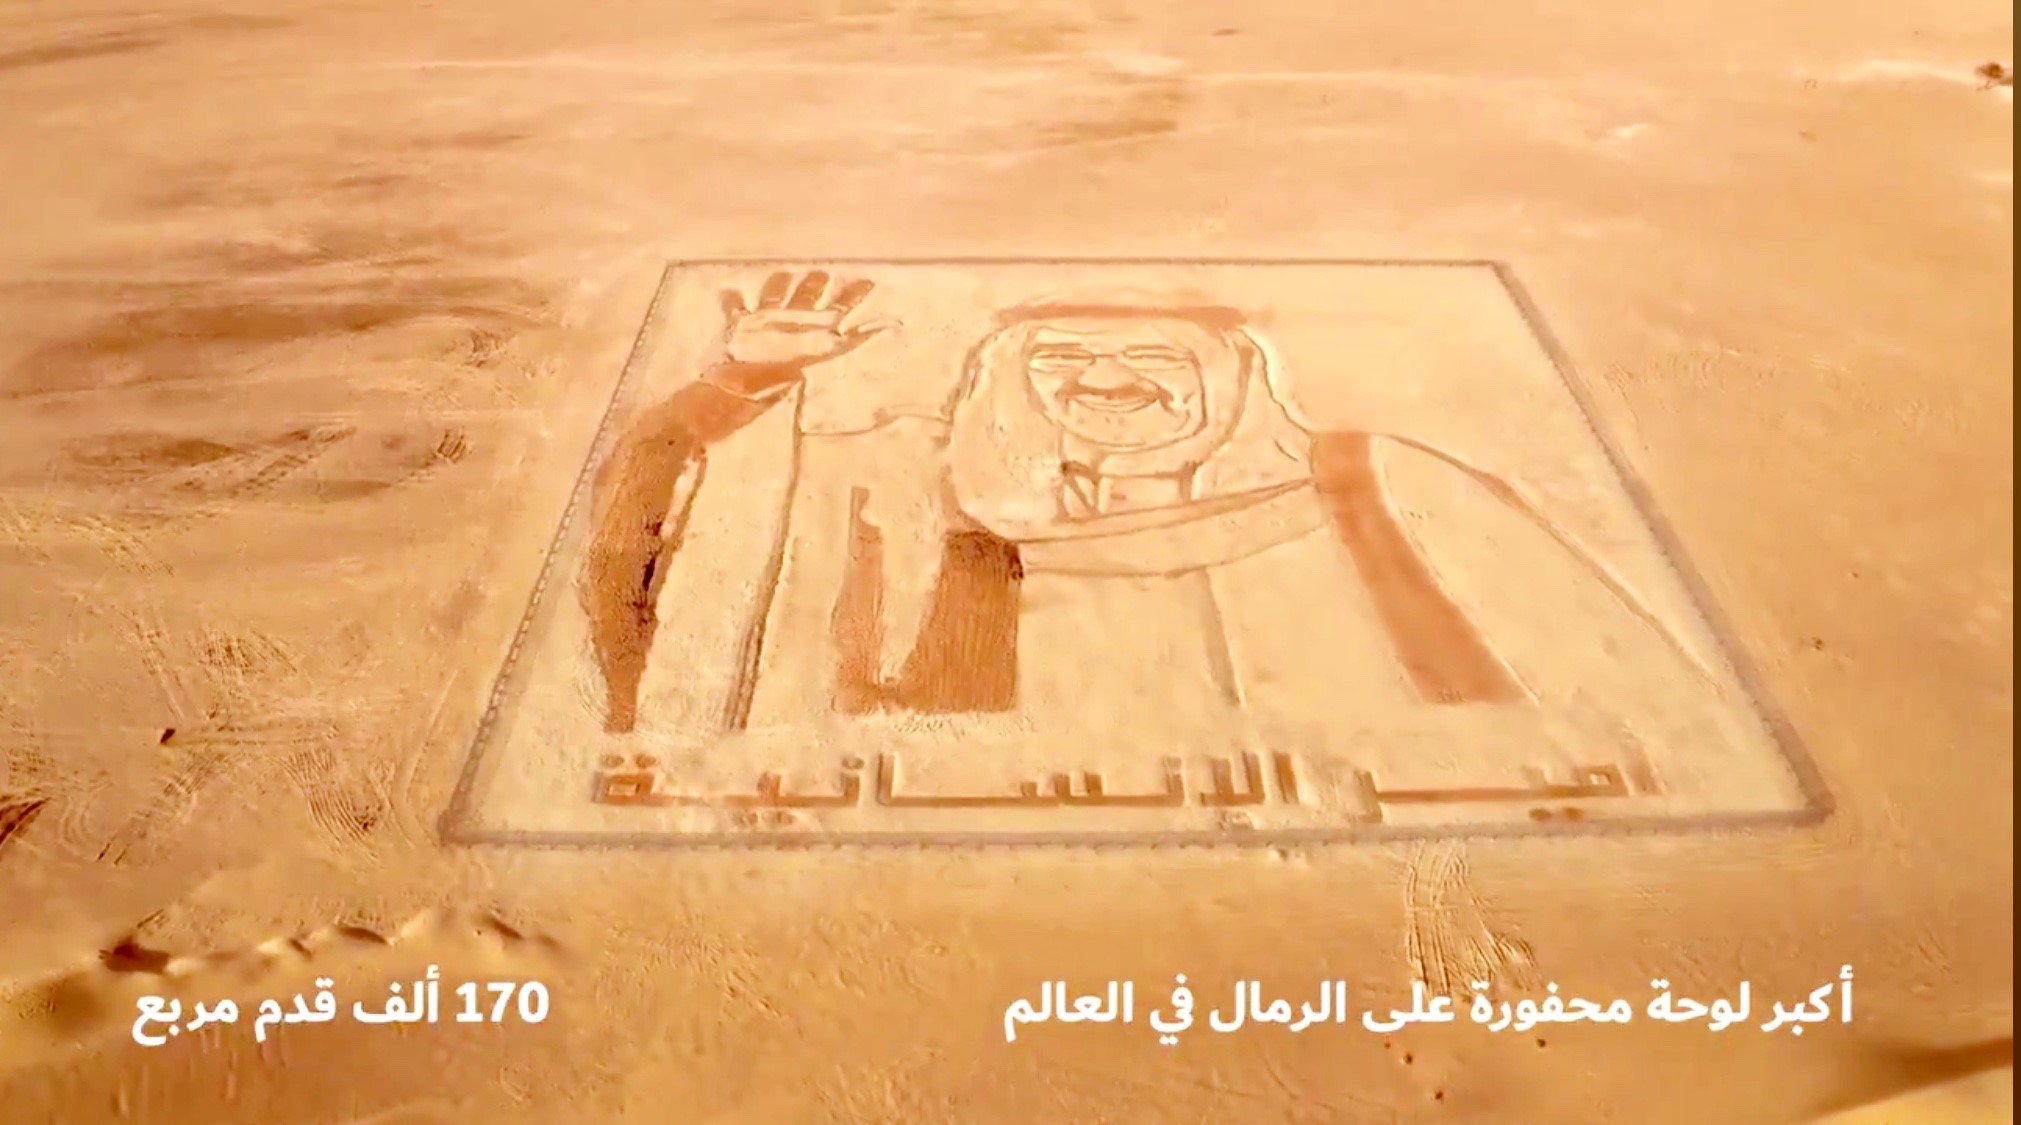 لوحة عملاقة تحمل صورة سمو أمير البلاد الشيخ صباح الأحمد الجابر الصباح في اكبر لوحة محفورة على الرمال في العالم